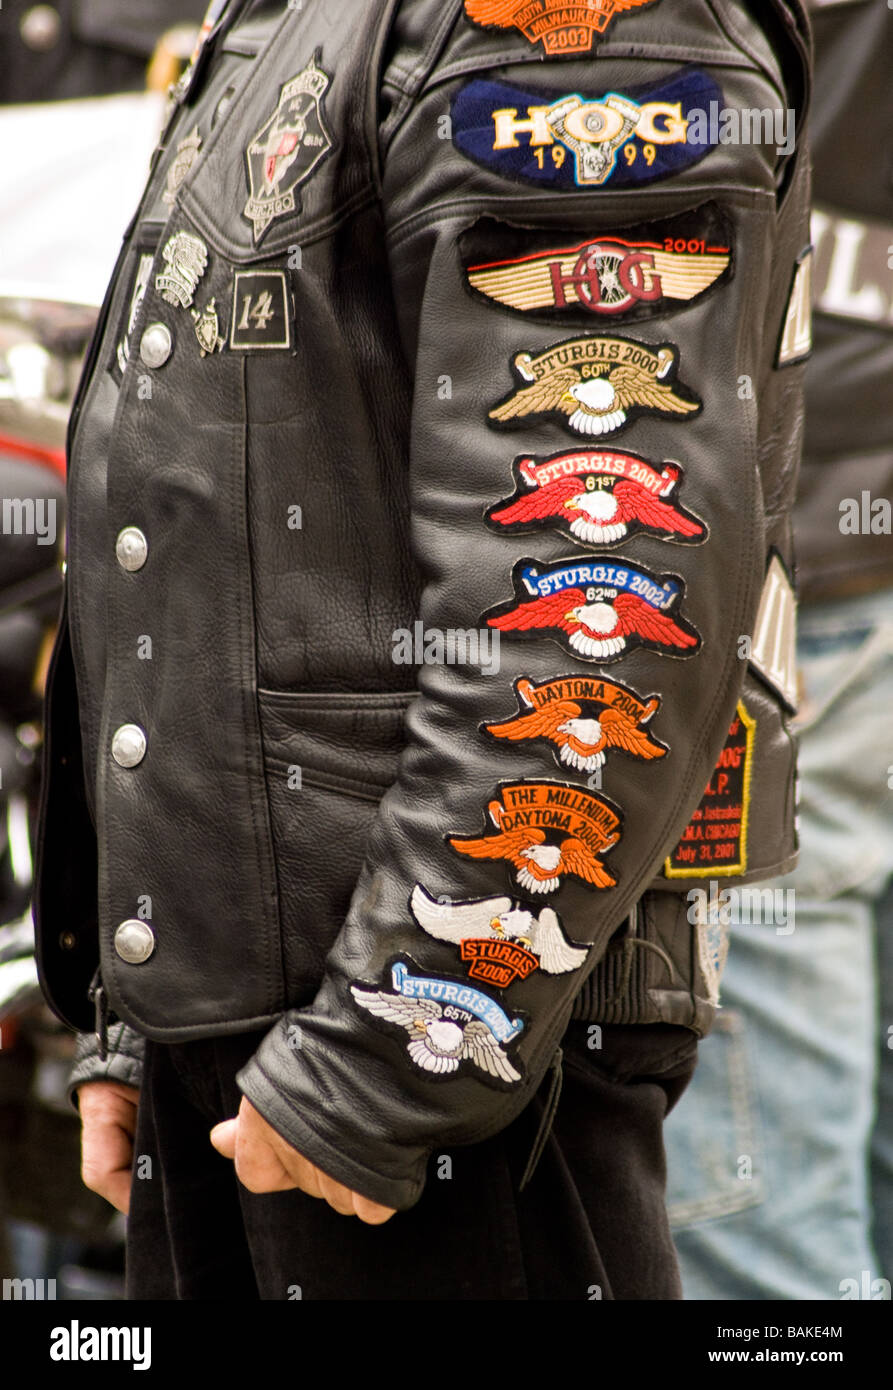 Nahaufnahme der polnischen Biker Jacke und Arm Patches bei Chicago  polnischen Parade Stockfotografie - Alamy